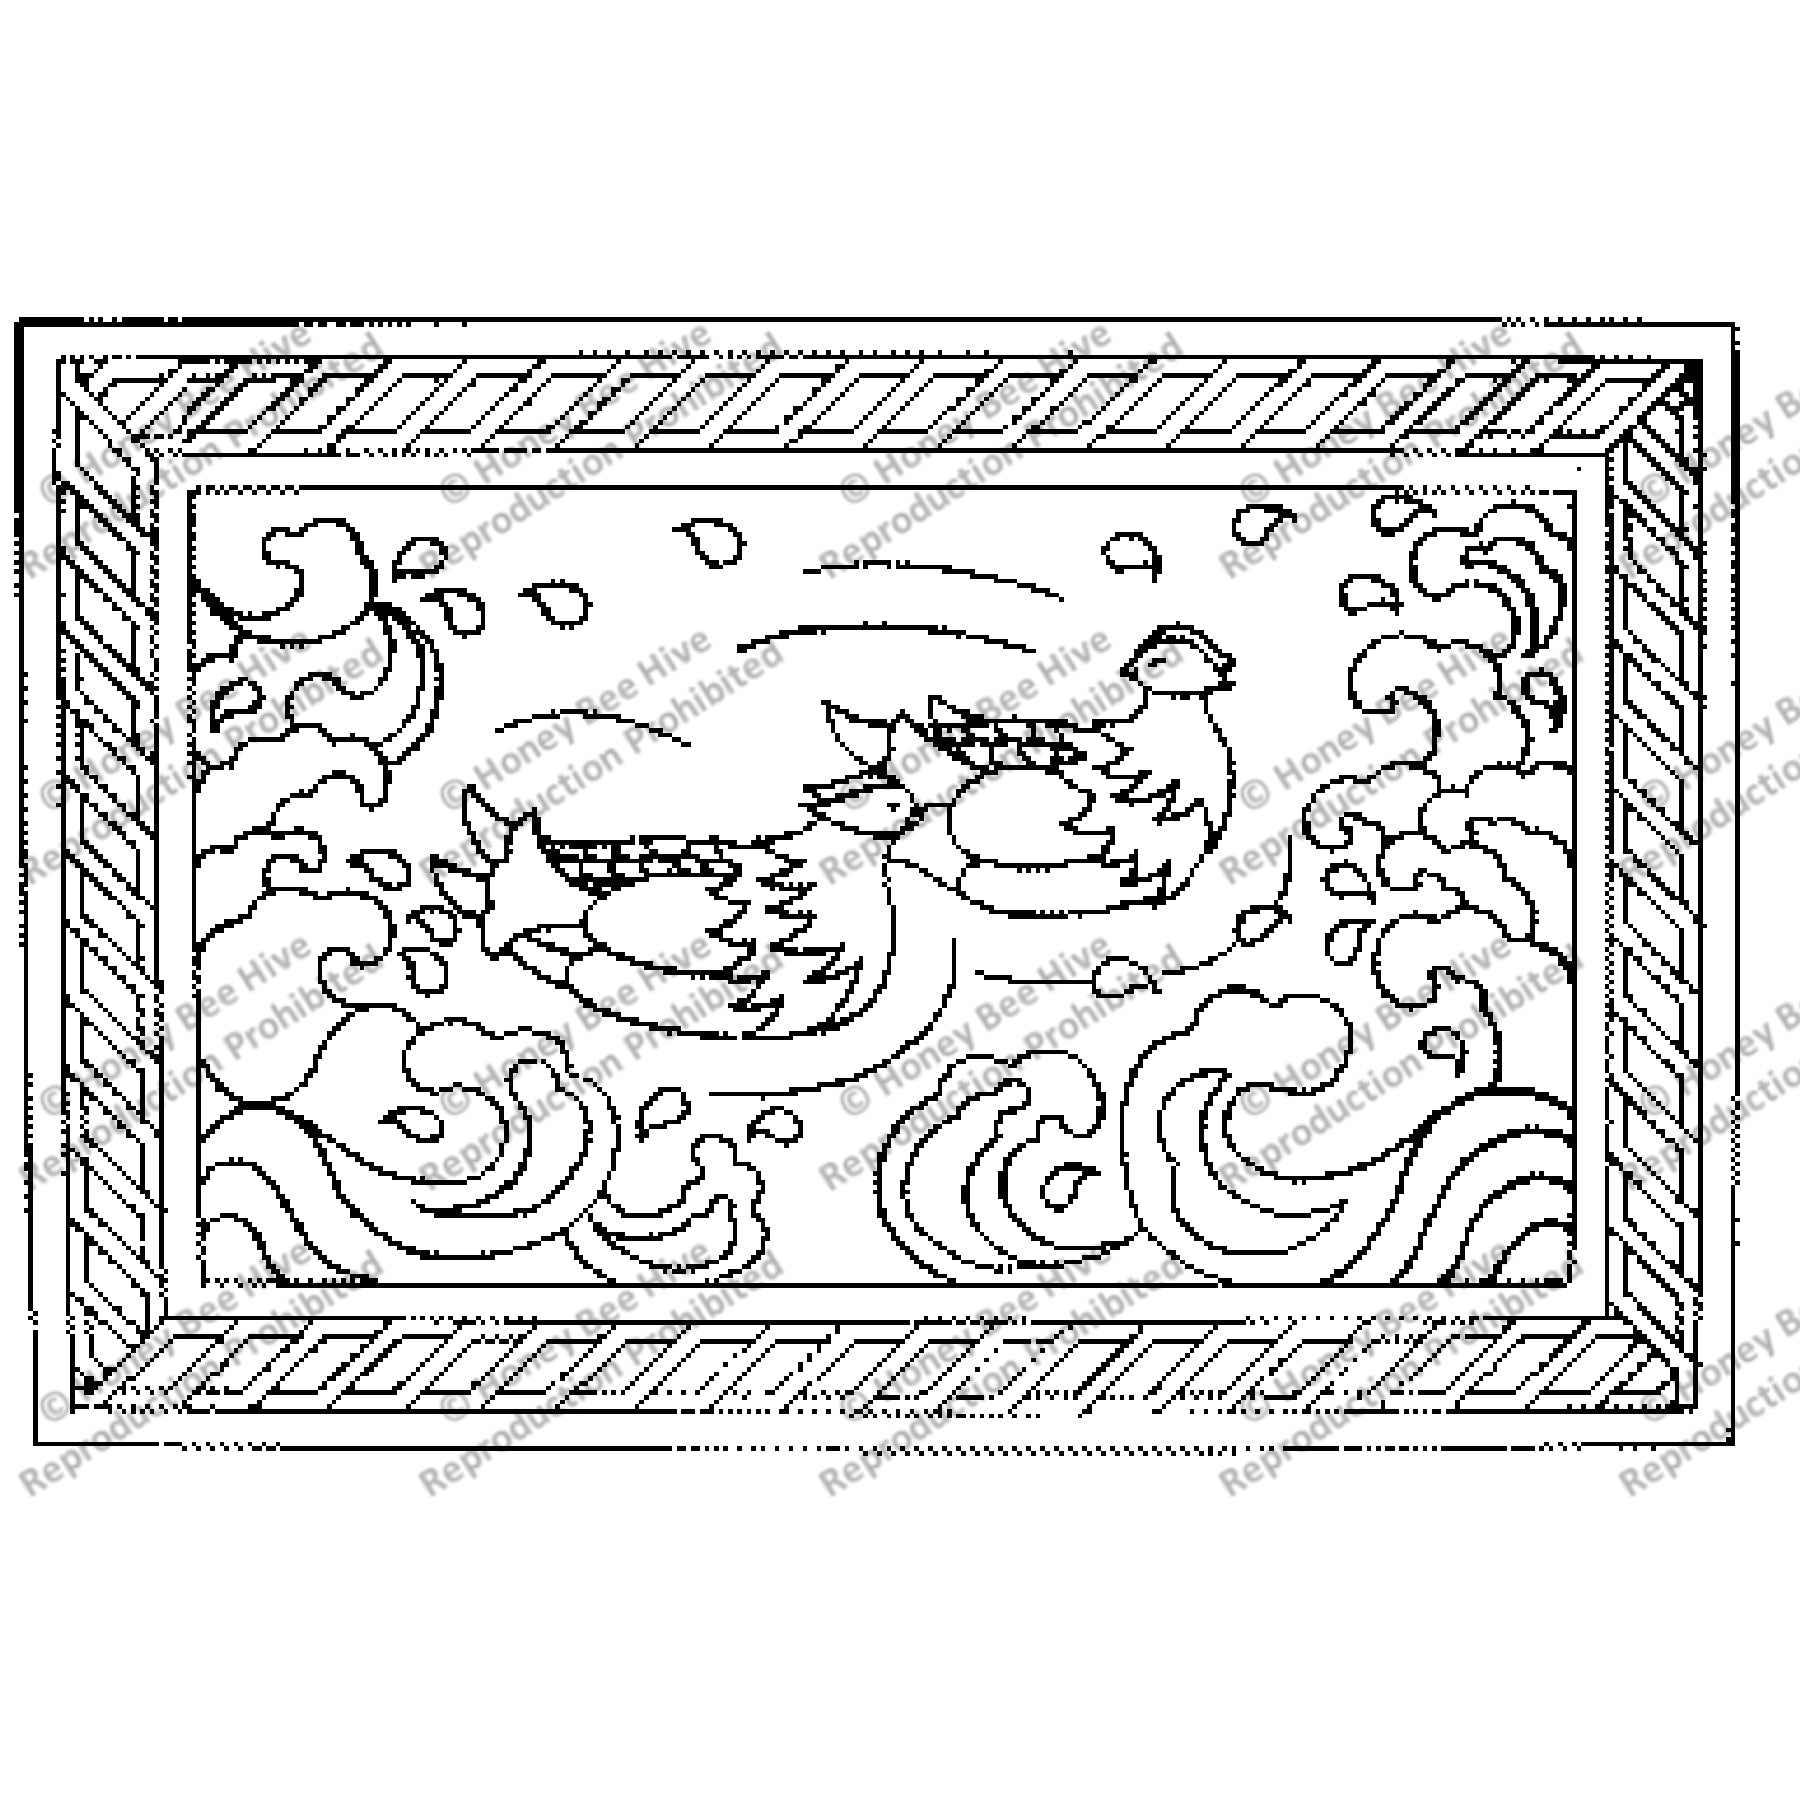 Mandarin Ducks, rug hooking pattern